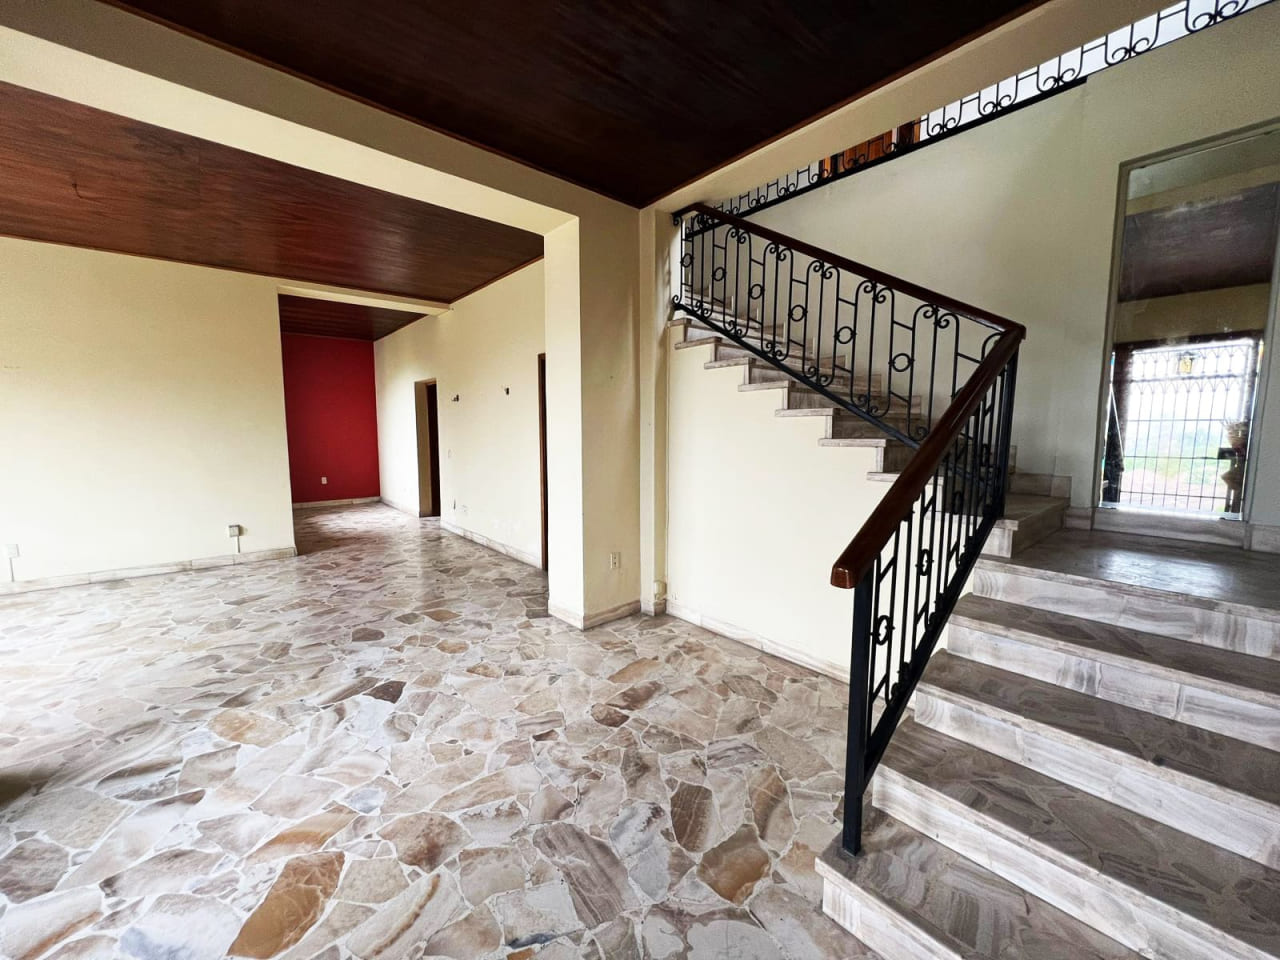 Escalera con acceso al 2 nivel de casa en col. Buena Vista, junto a sala de estar con techo de madera, piso de cerámica.